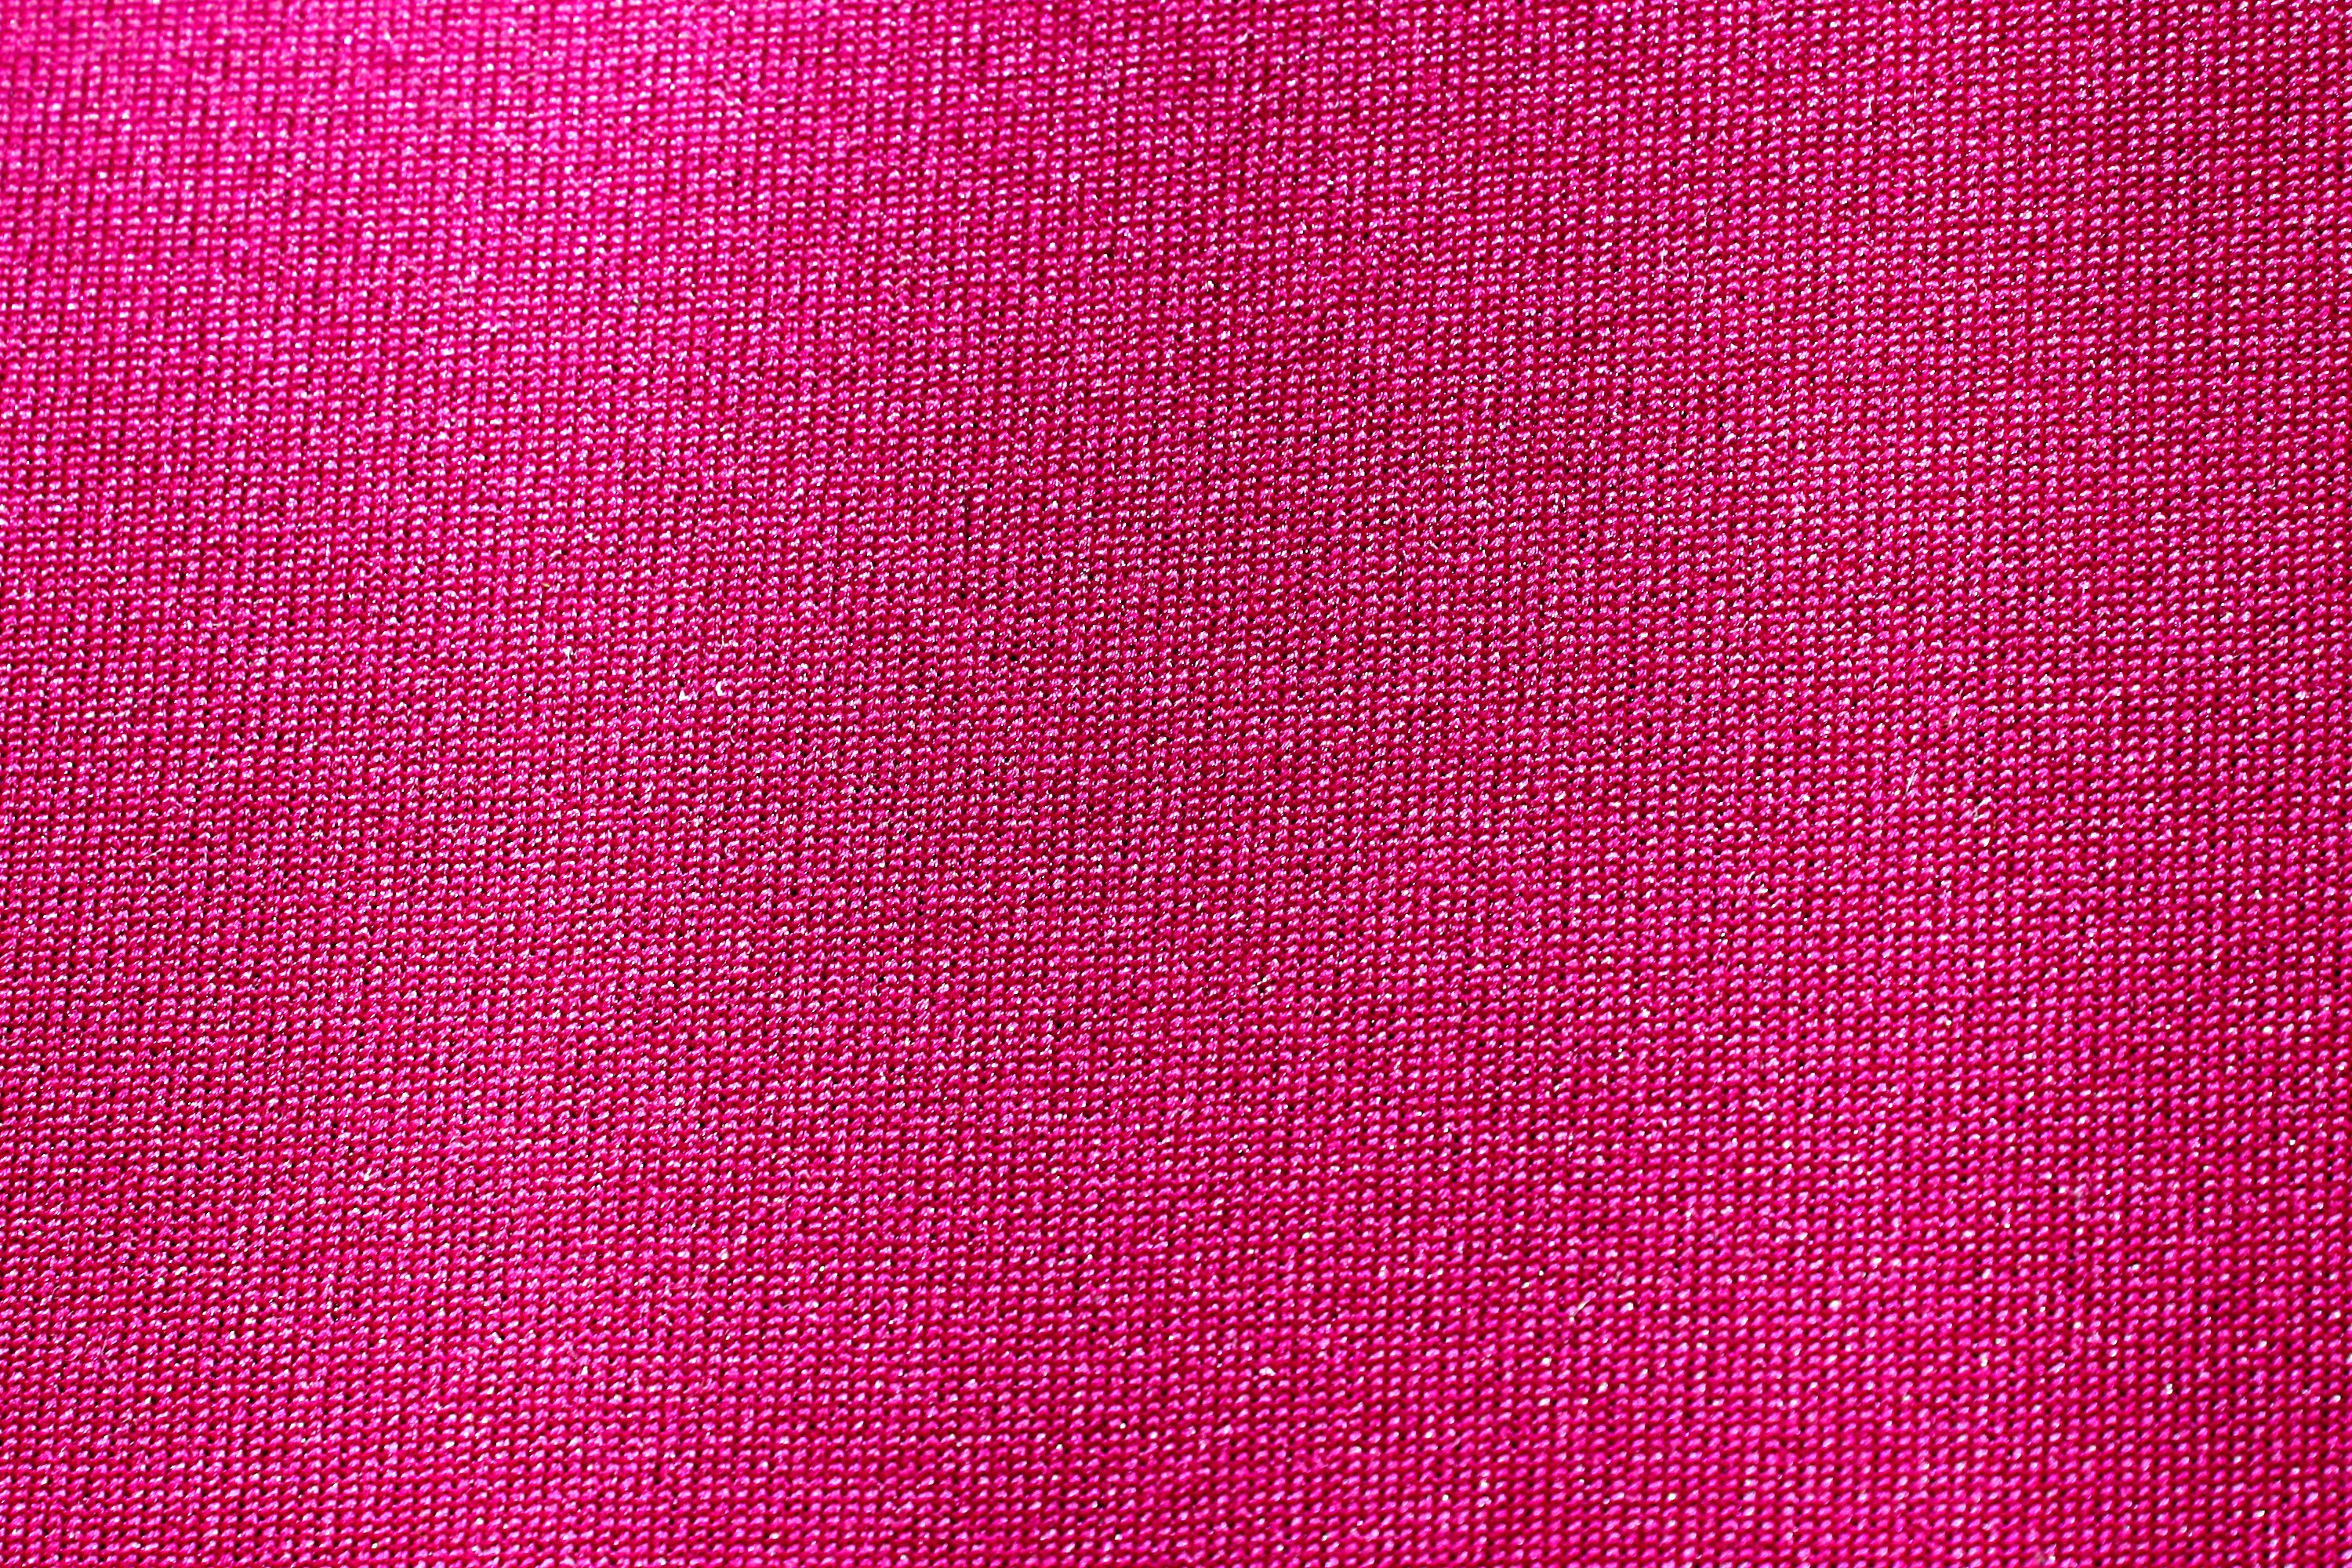 女の子のためのピンクの壁紙,ピンク,赤,紫の,バイオレット,繊維